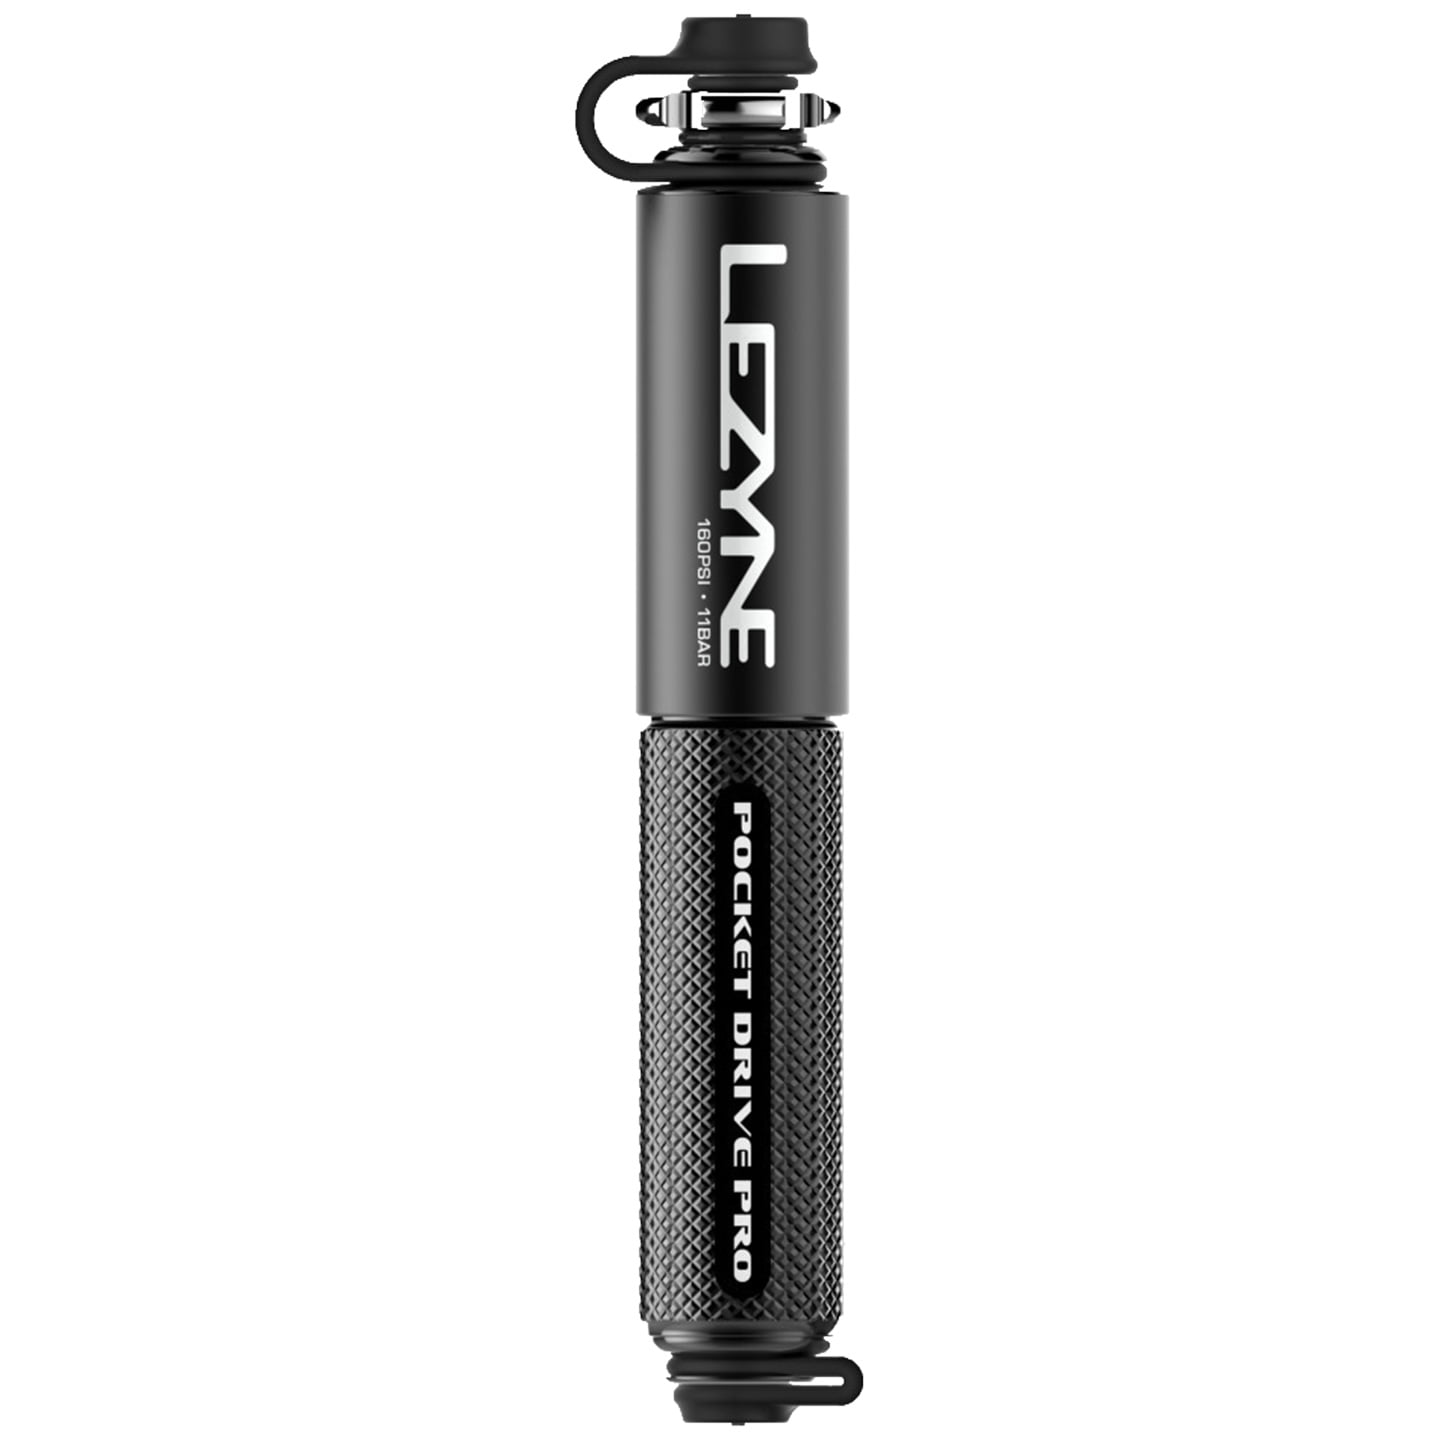 LEZYNE Pocket Drive Pro Mini Pump Mini Pump, Bike pump, Bike accessories